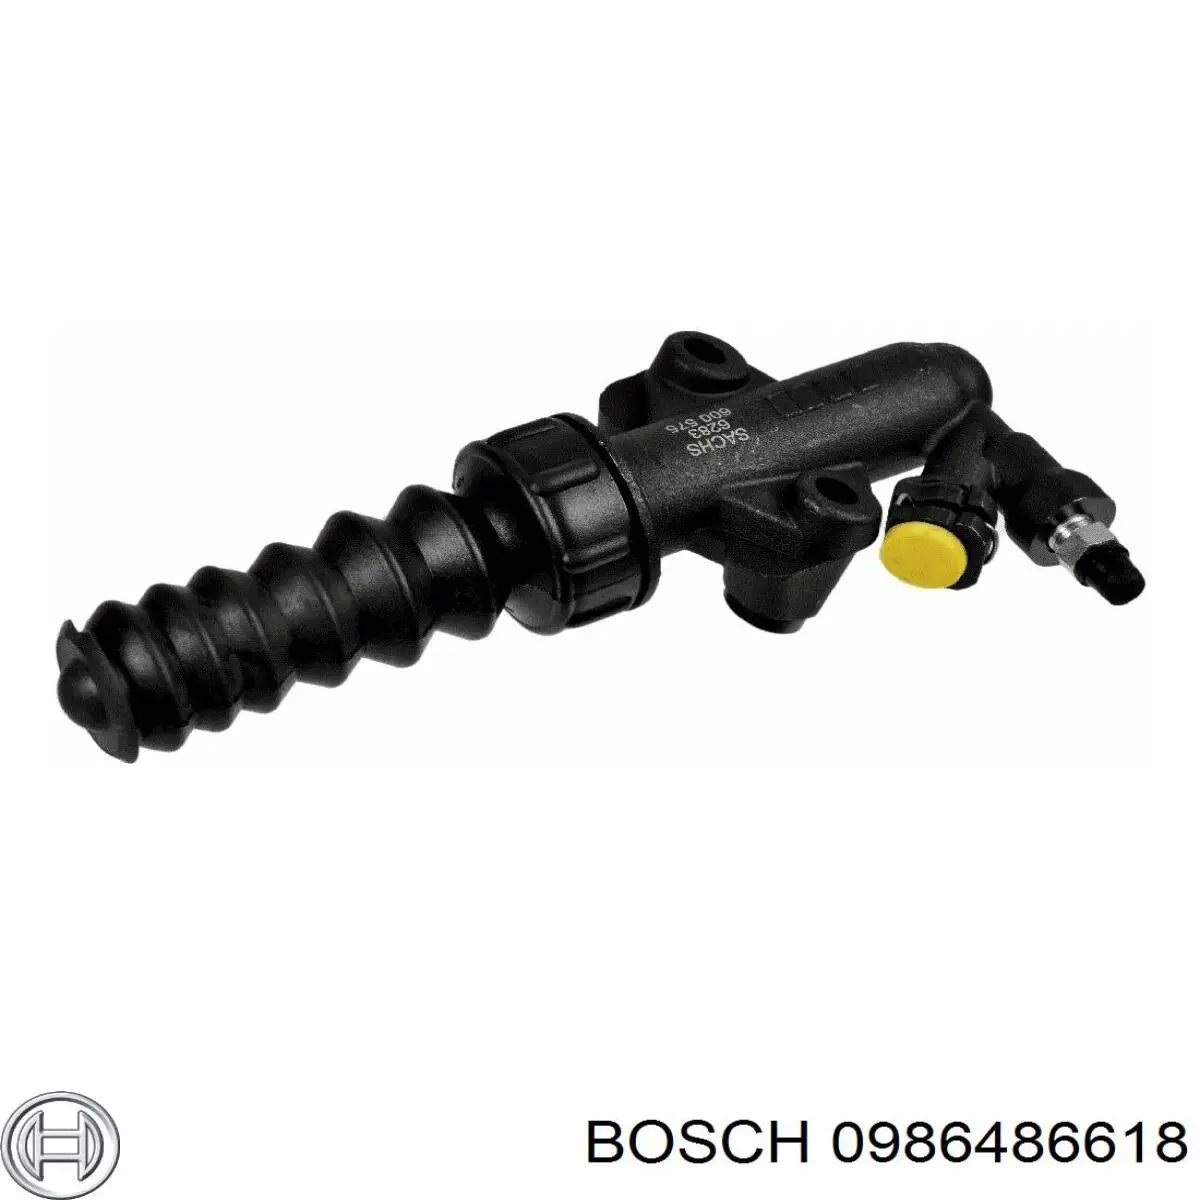 0986486618 Bosch bombin de embrague